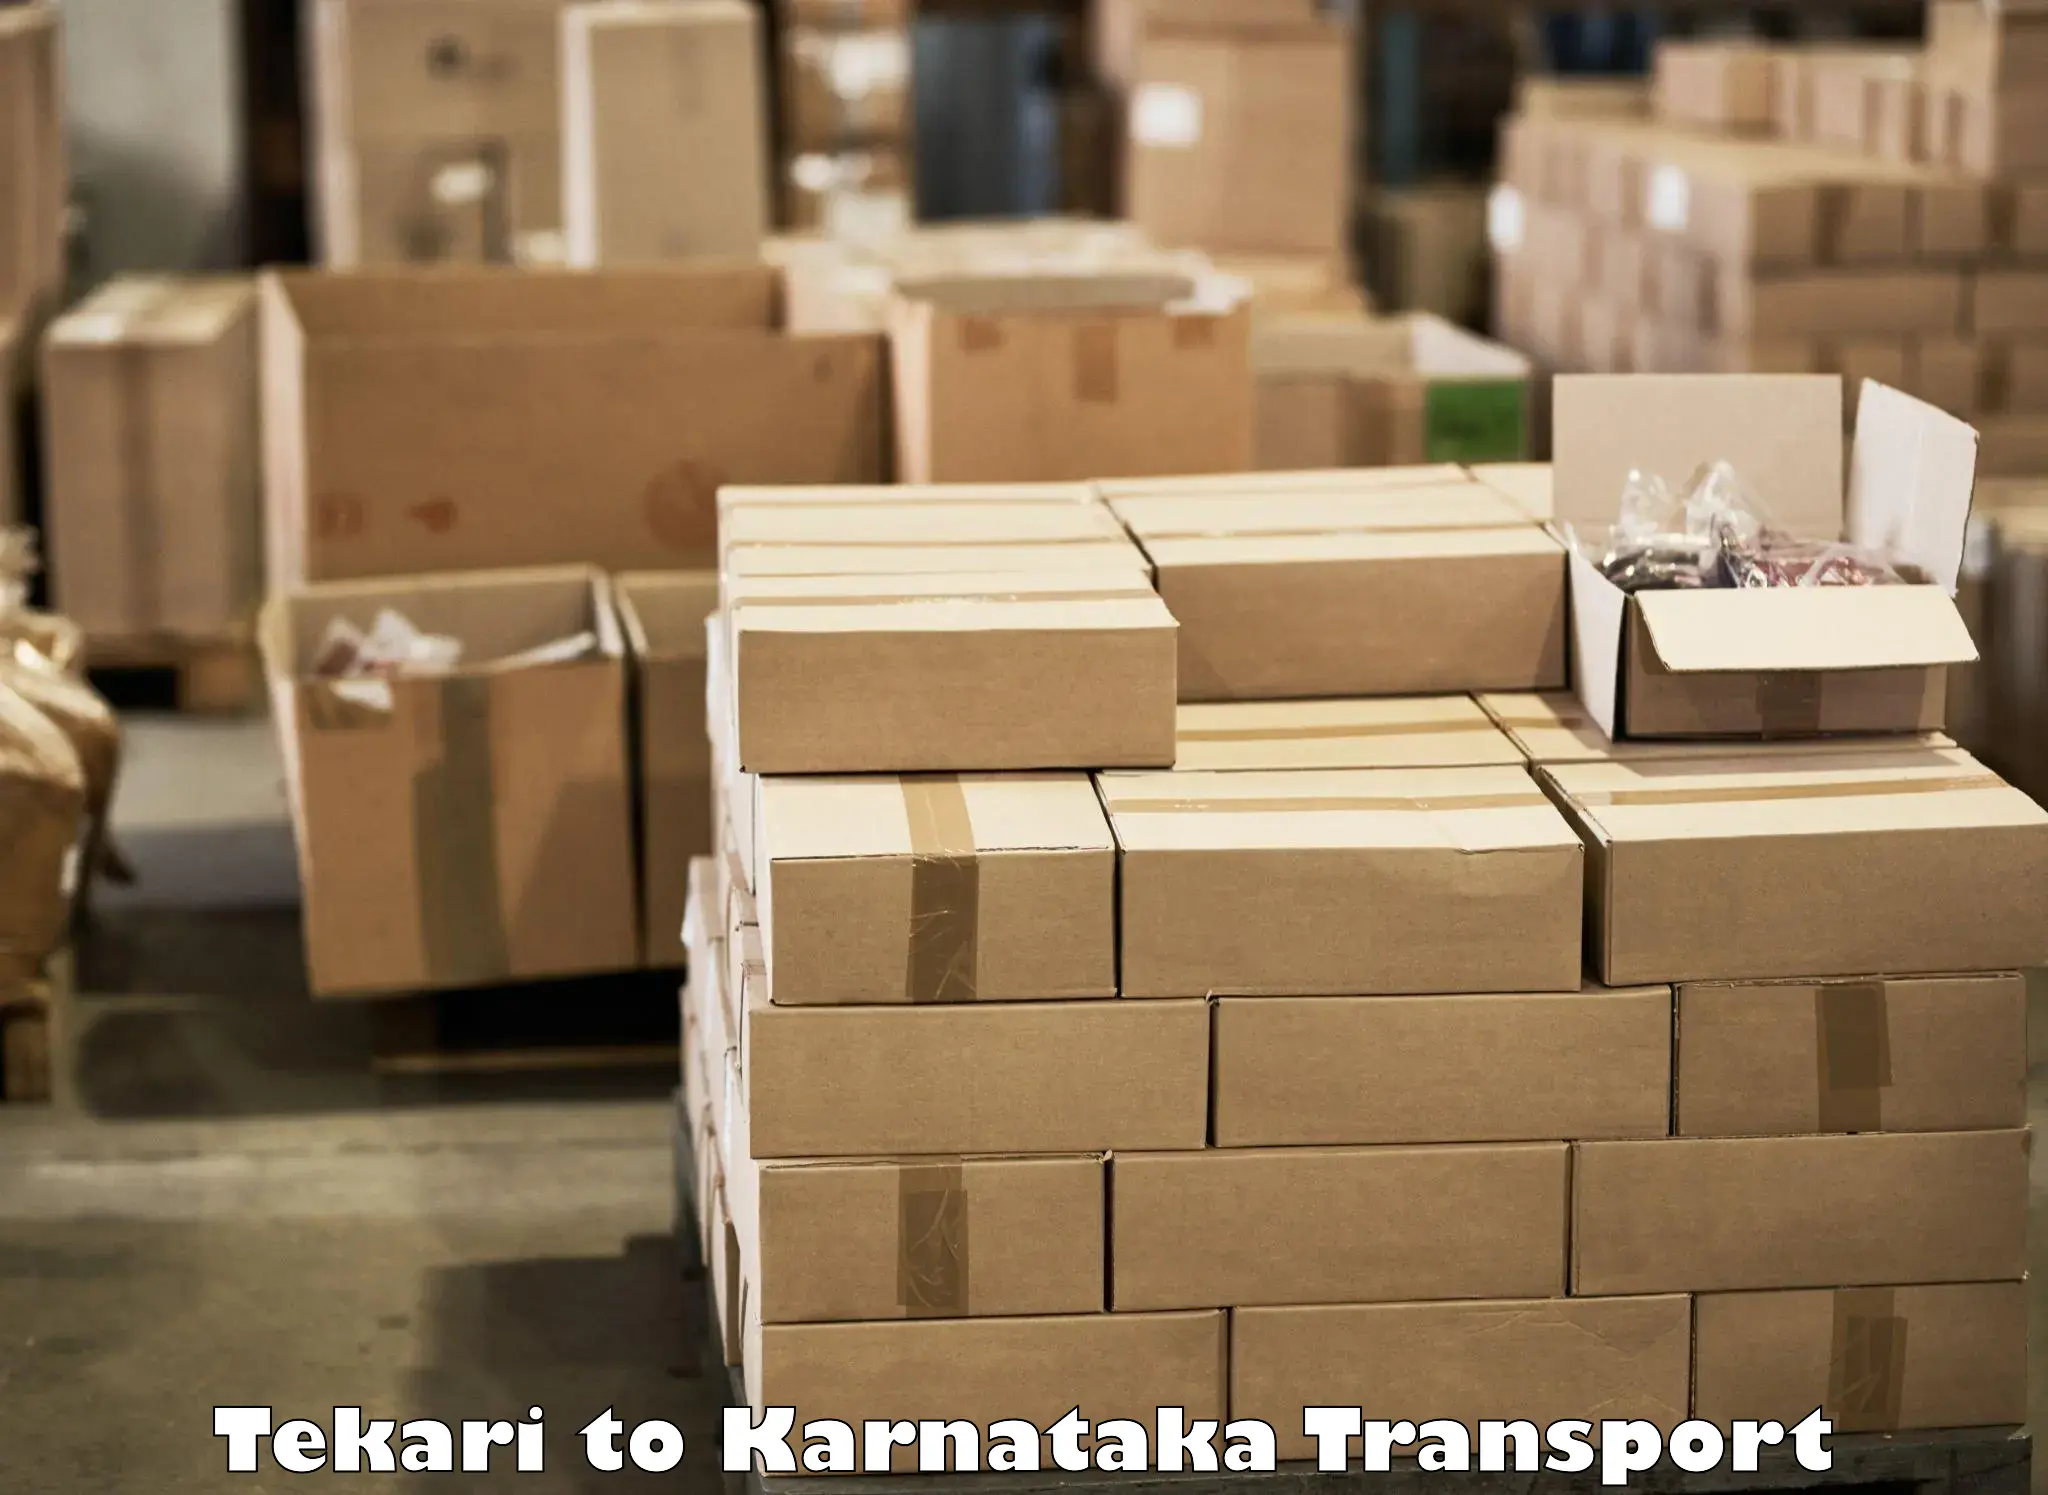 Logistics transportation services Tekari to Chikkamagalur